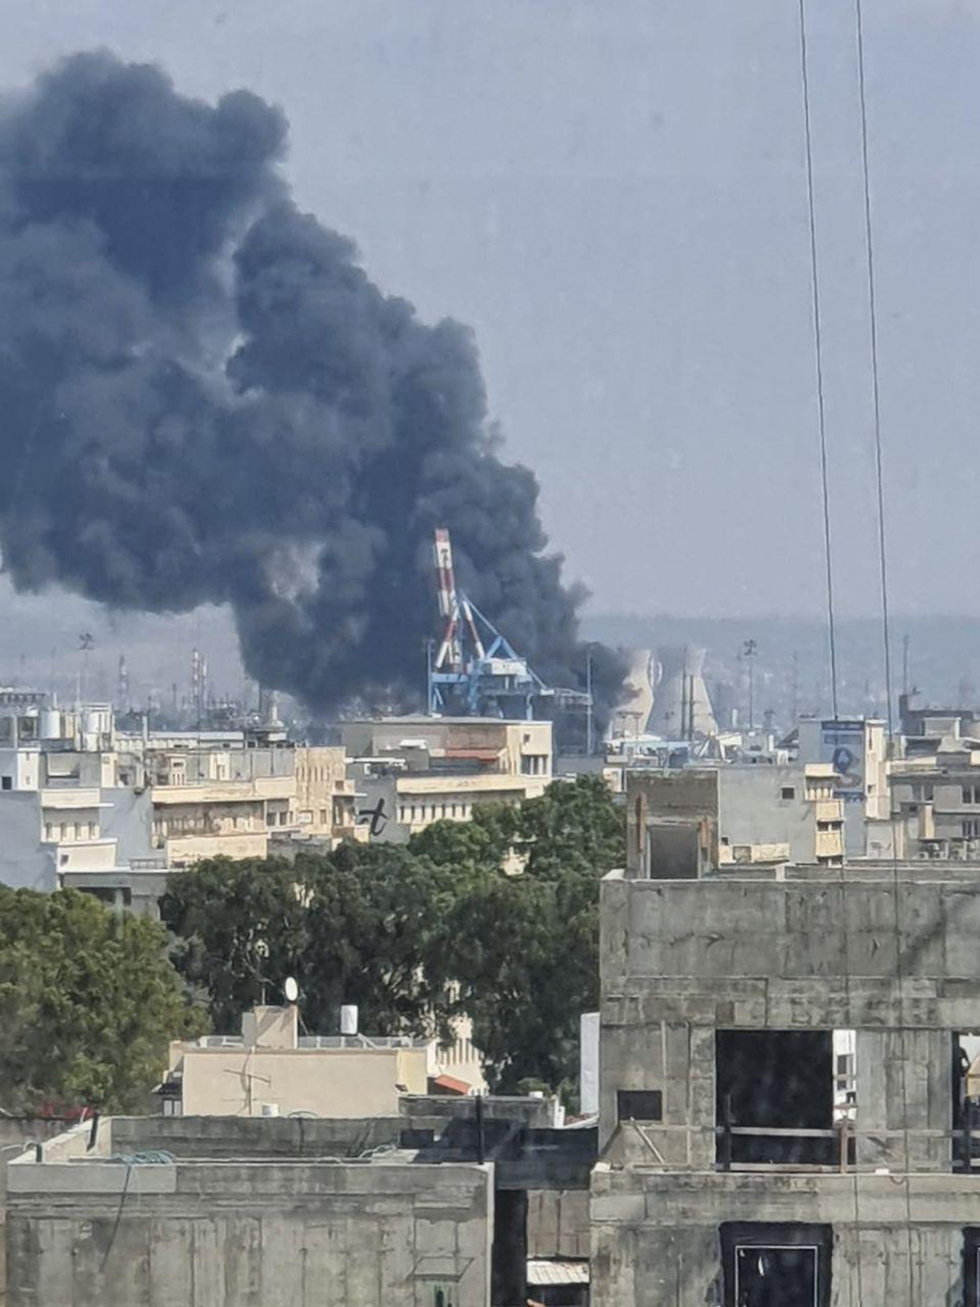 שריפה במפעל שמן בחיפה (צילום: תומר בן חמו)